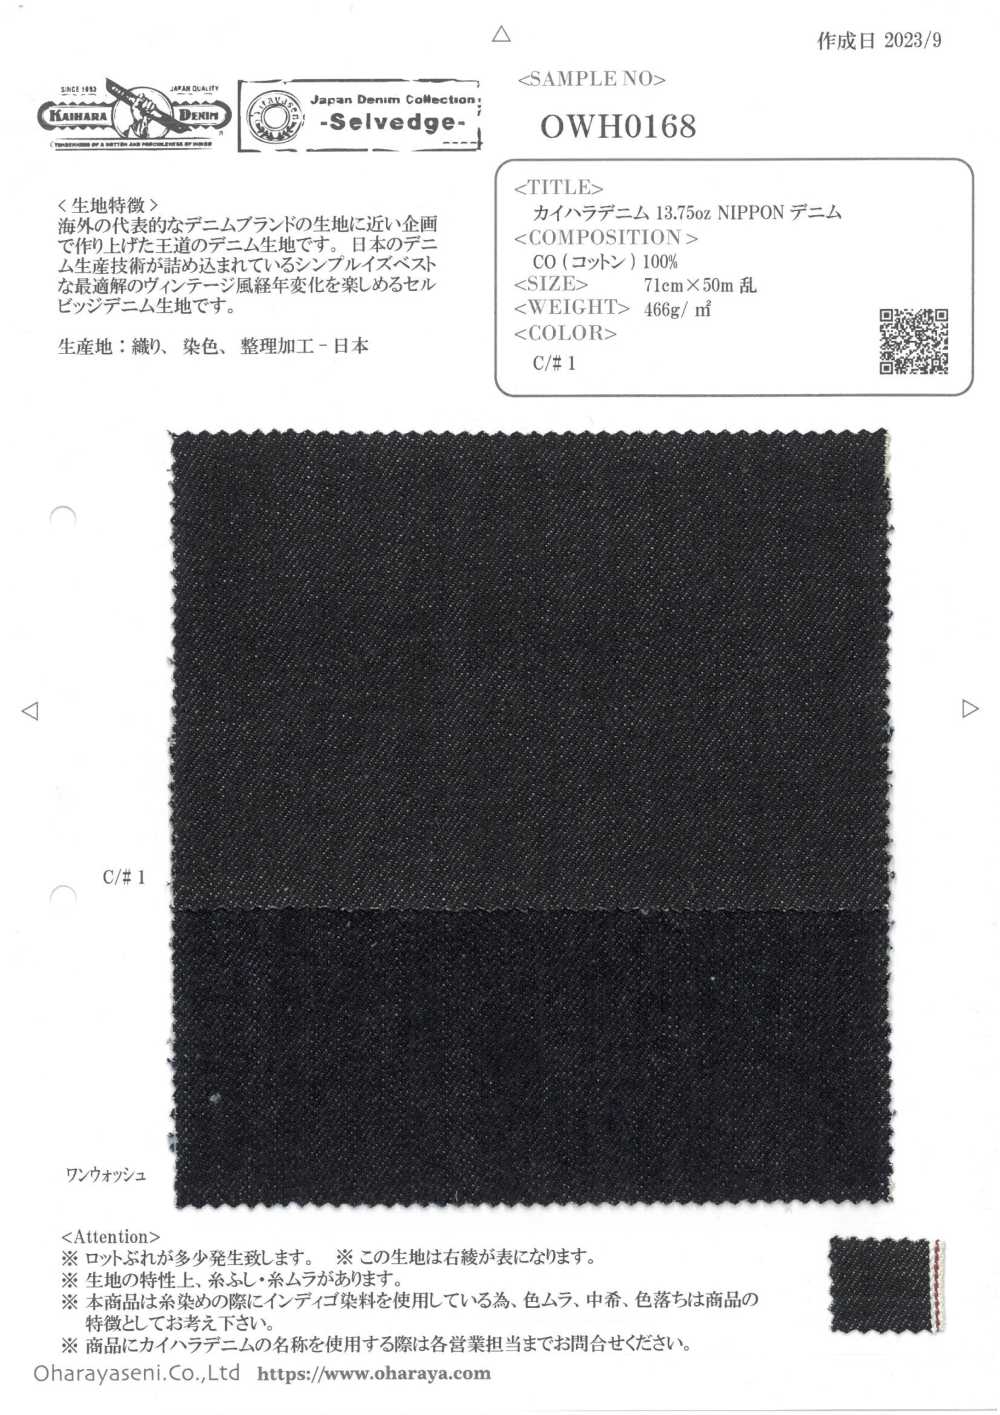 OWH0168 Denim Kaihara 13.75oz NIPPON Denim[Fabrica Textil] Oharayaseni